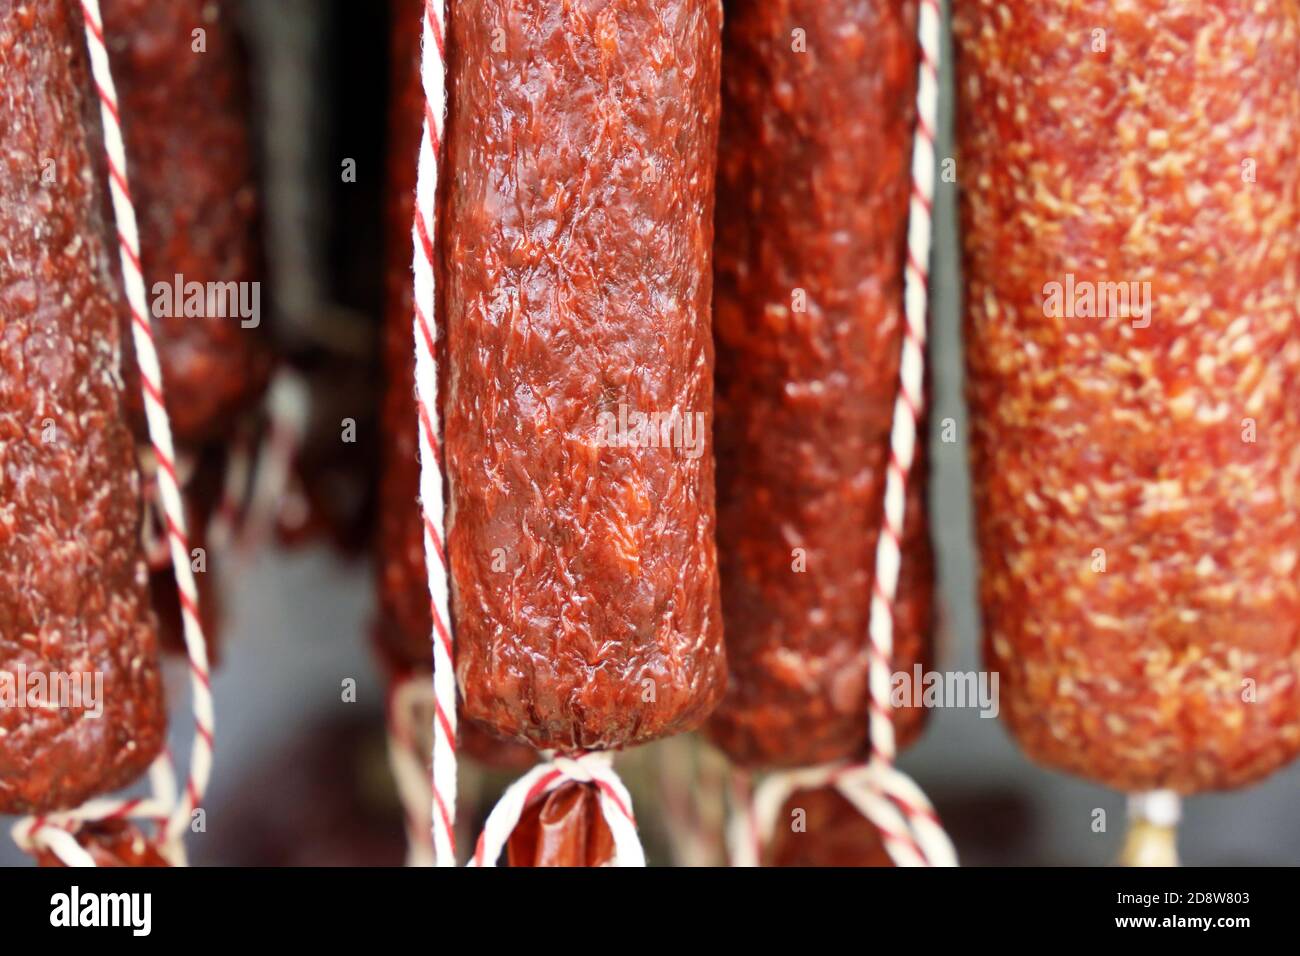 Des bâtonnets de saucisse sont suspendus dans le magasin. Production et vente de produits carnés Banque D'Images